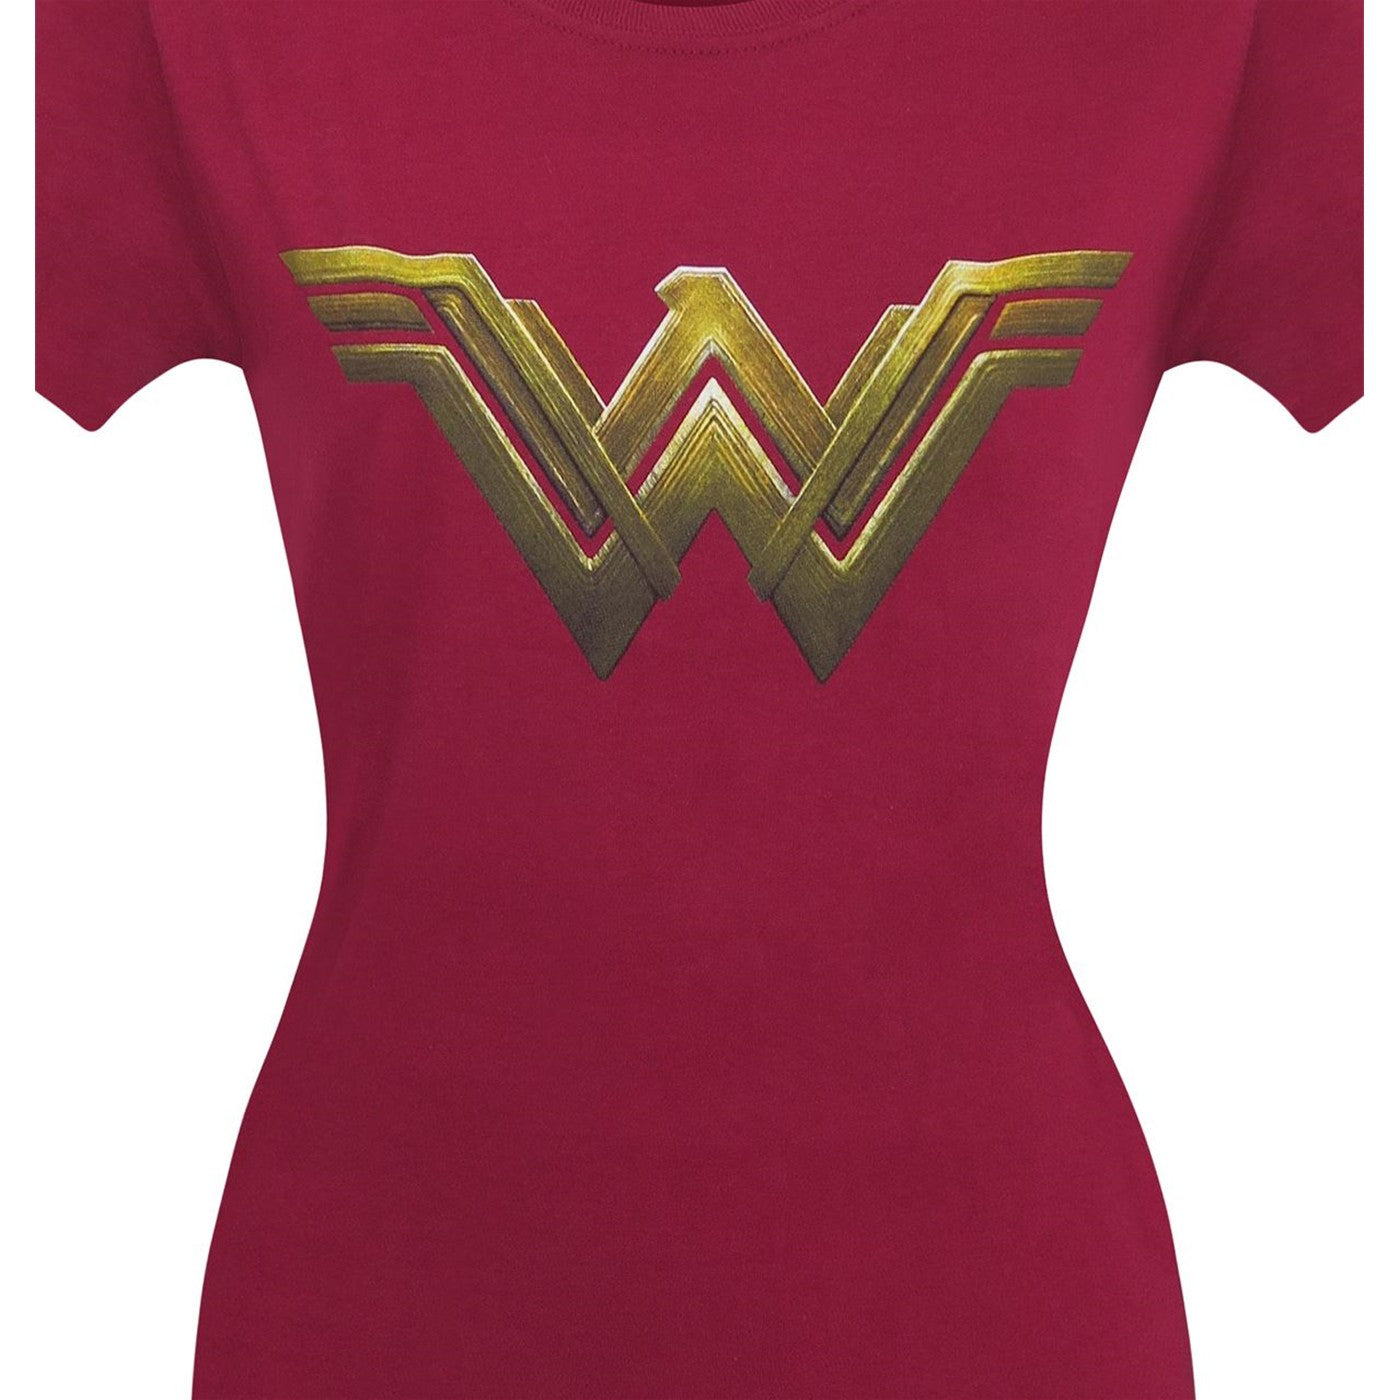 title:Wonder Woman Justice League Logo Women's T-Shirt;color:Red